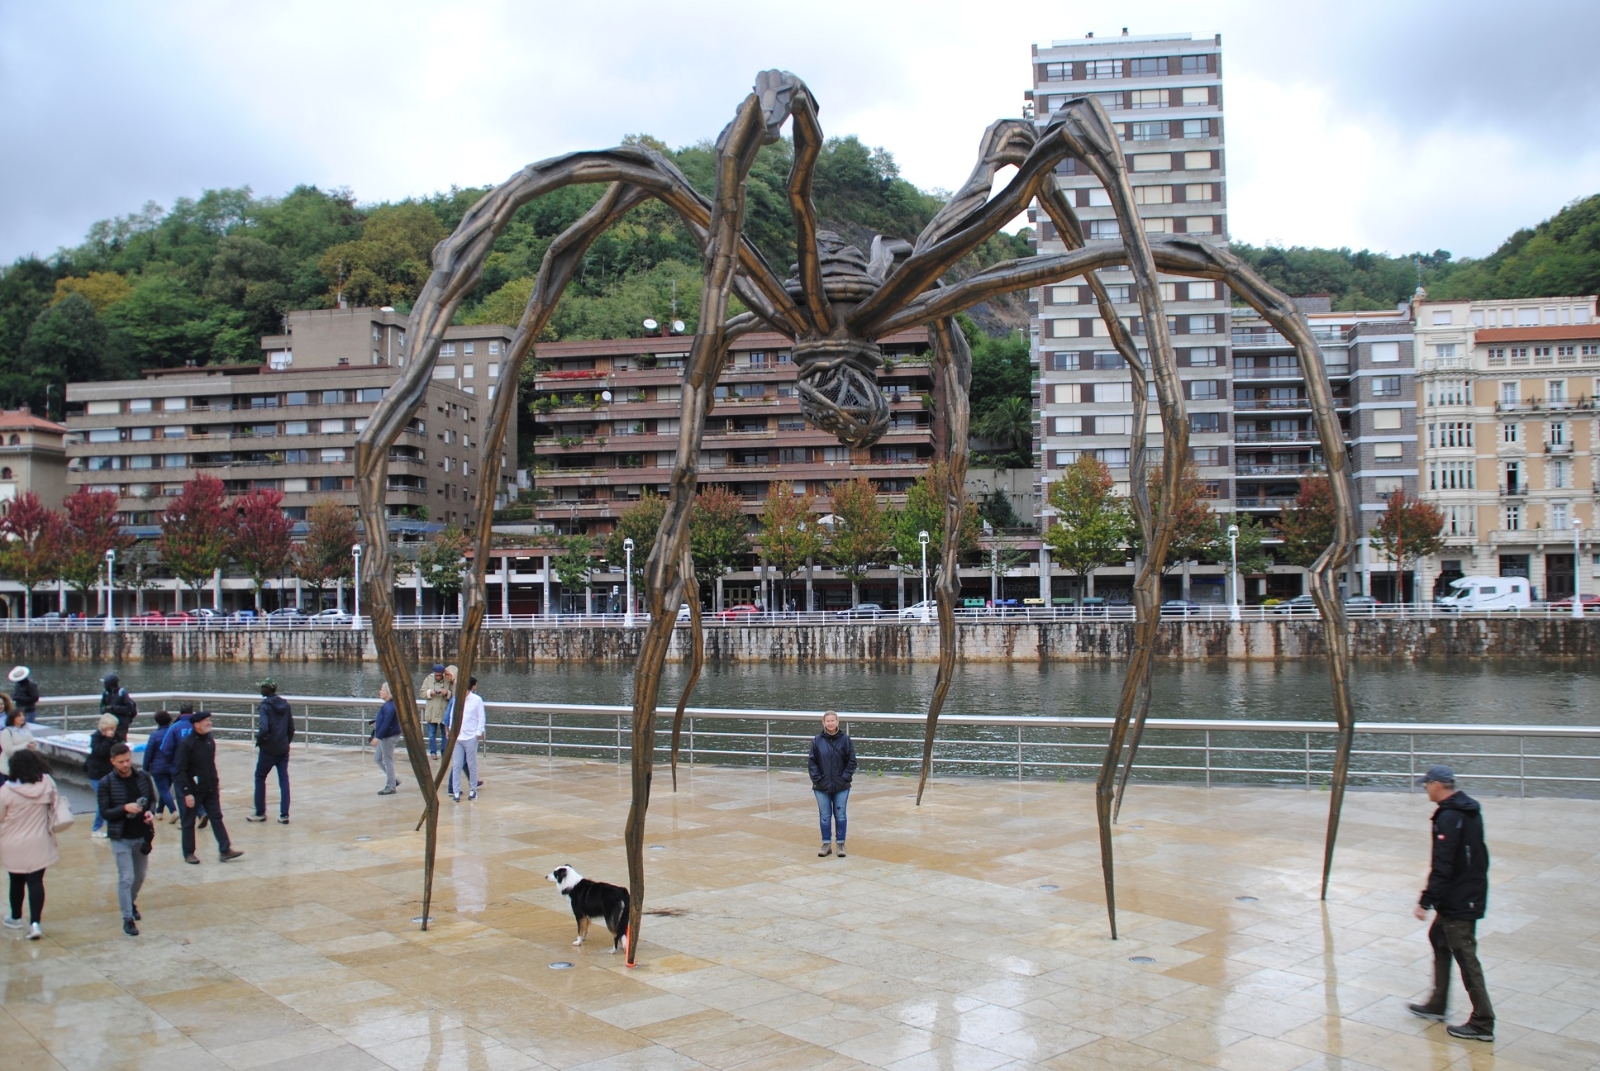 Die Spinne ist genauso ein Wahrzeichen des Museums...